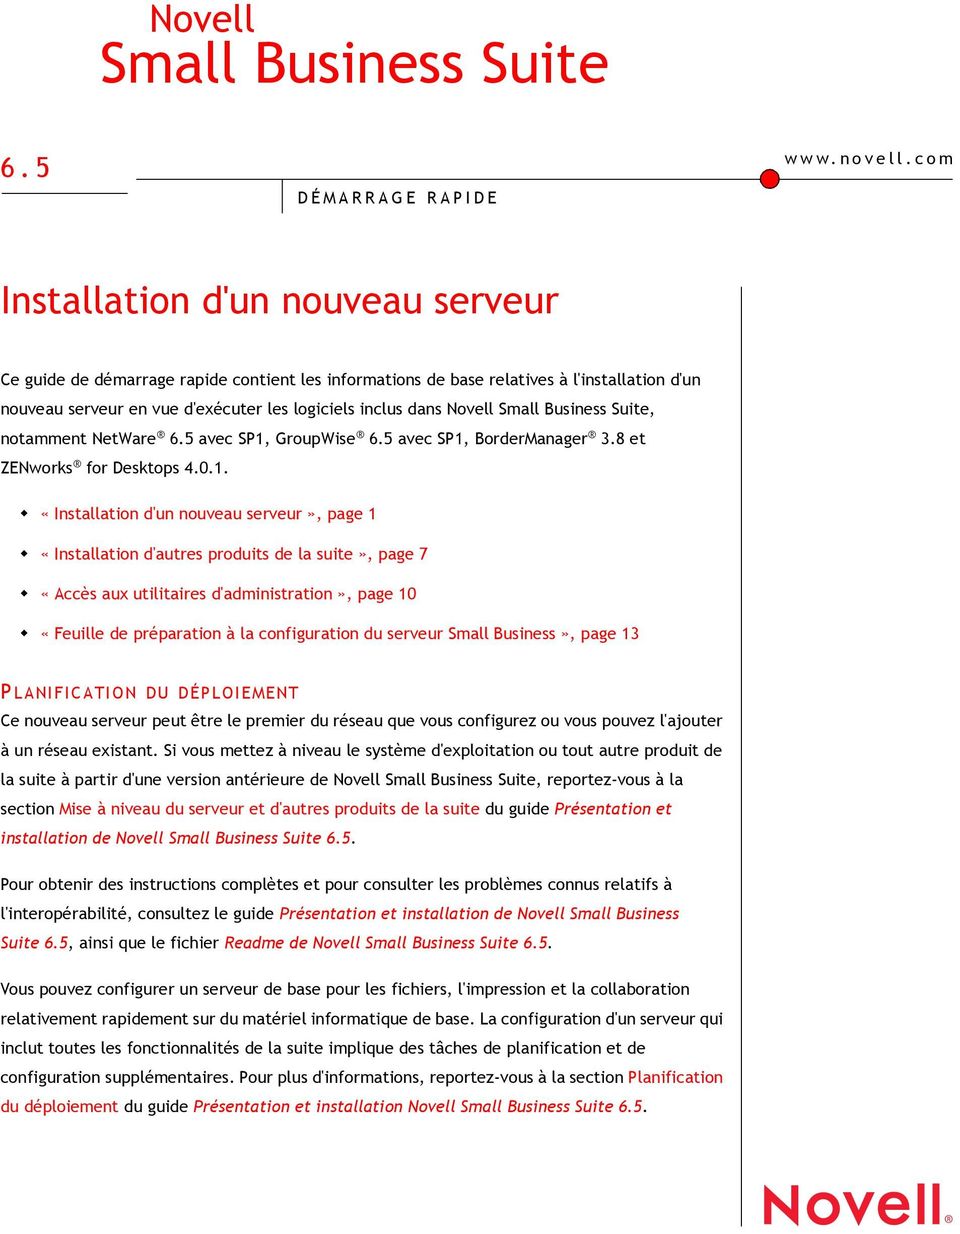 Small Business Suite, notamment NetWare 6.5 avec SP1, GroupWise 6.5 avec SP1, BorderManager 3.8 et ZENworks for Desktops 4.0.1.! «Installation d'un nouveau serveur», page 1!